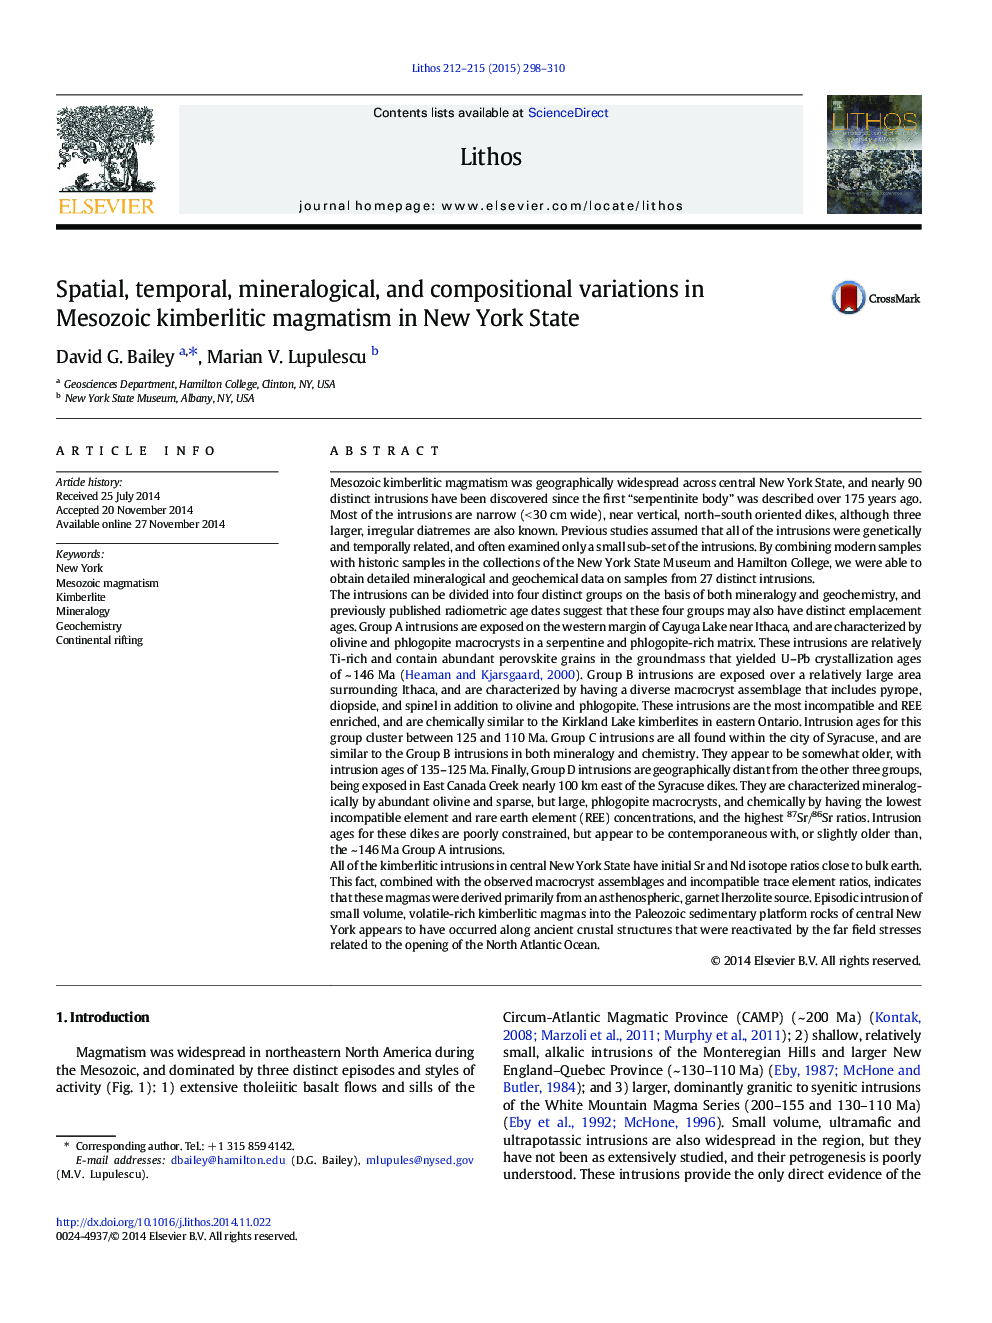 تغییرات فضایی، زمانی، کانی شناسی و ترکیبات ماگماتیسم کیمبرلیتی مزوزوئیک در ایالت نیویورک 